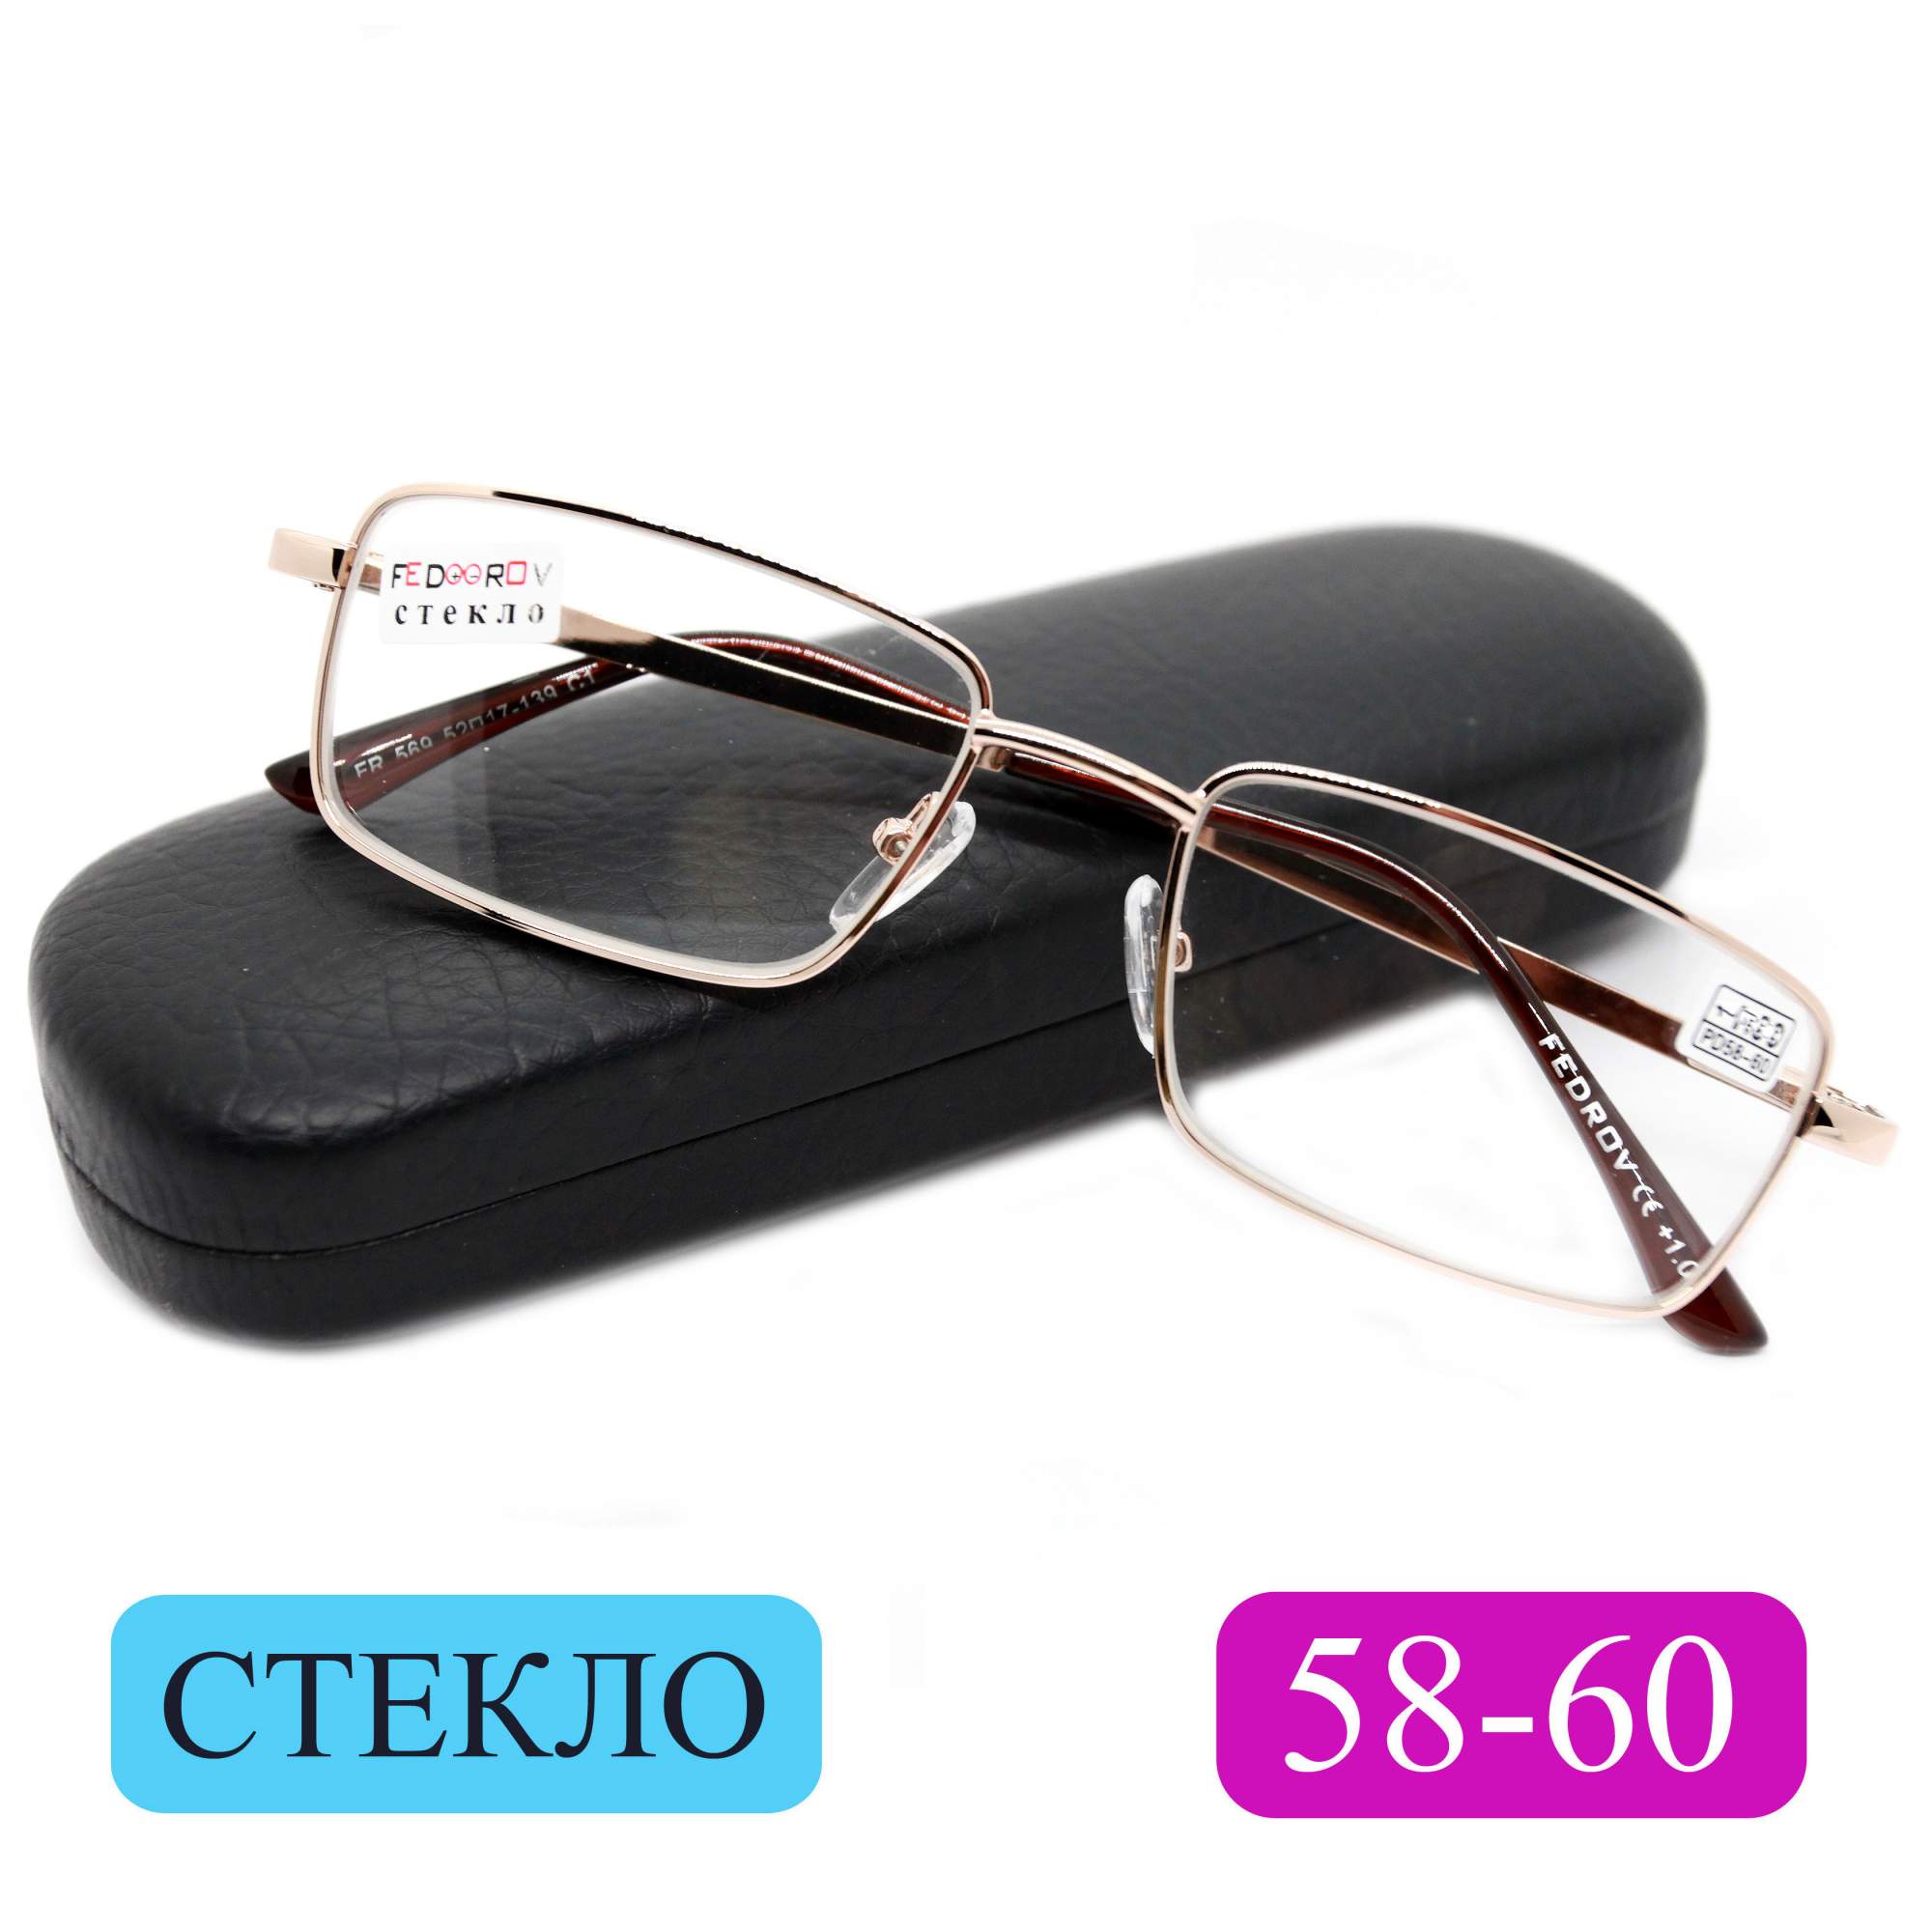 Готовые очки Fedrov 569, со стеклянной линзой, +2,25, c футляром, золотые, РЦ 58-60